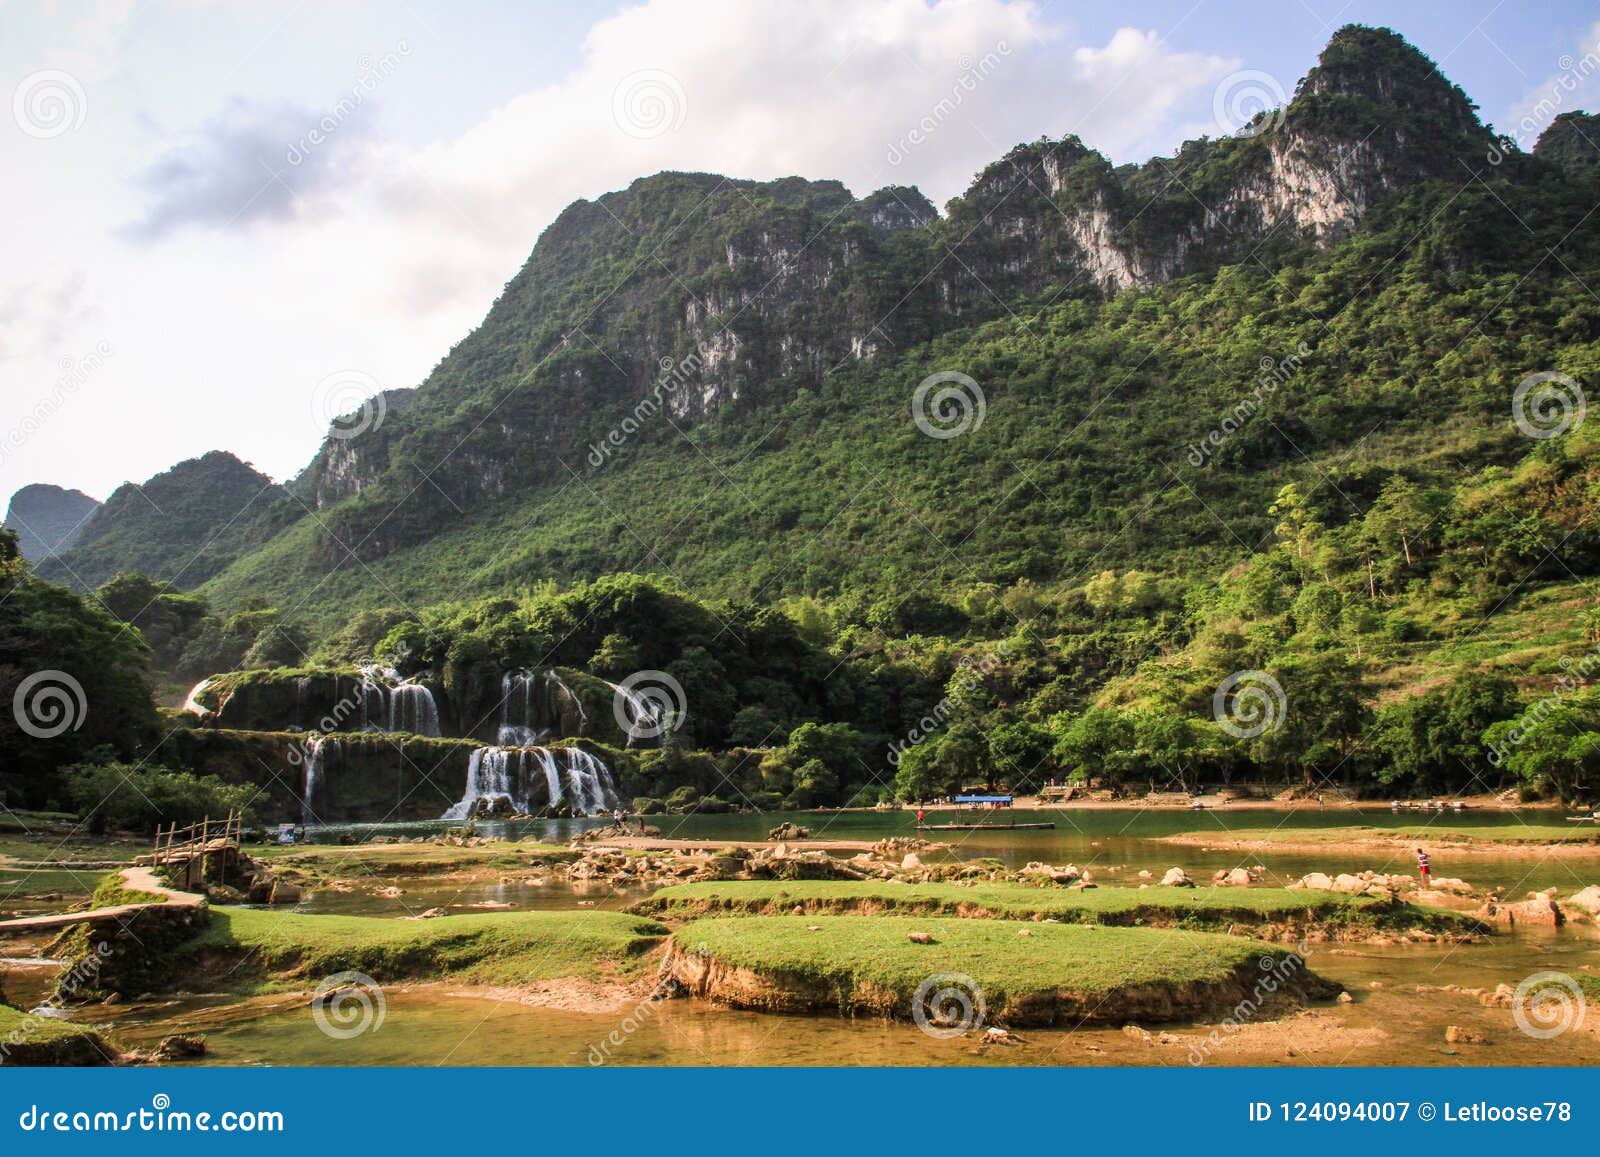 ban gioc waterfall, cao bang province, north vietnam